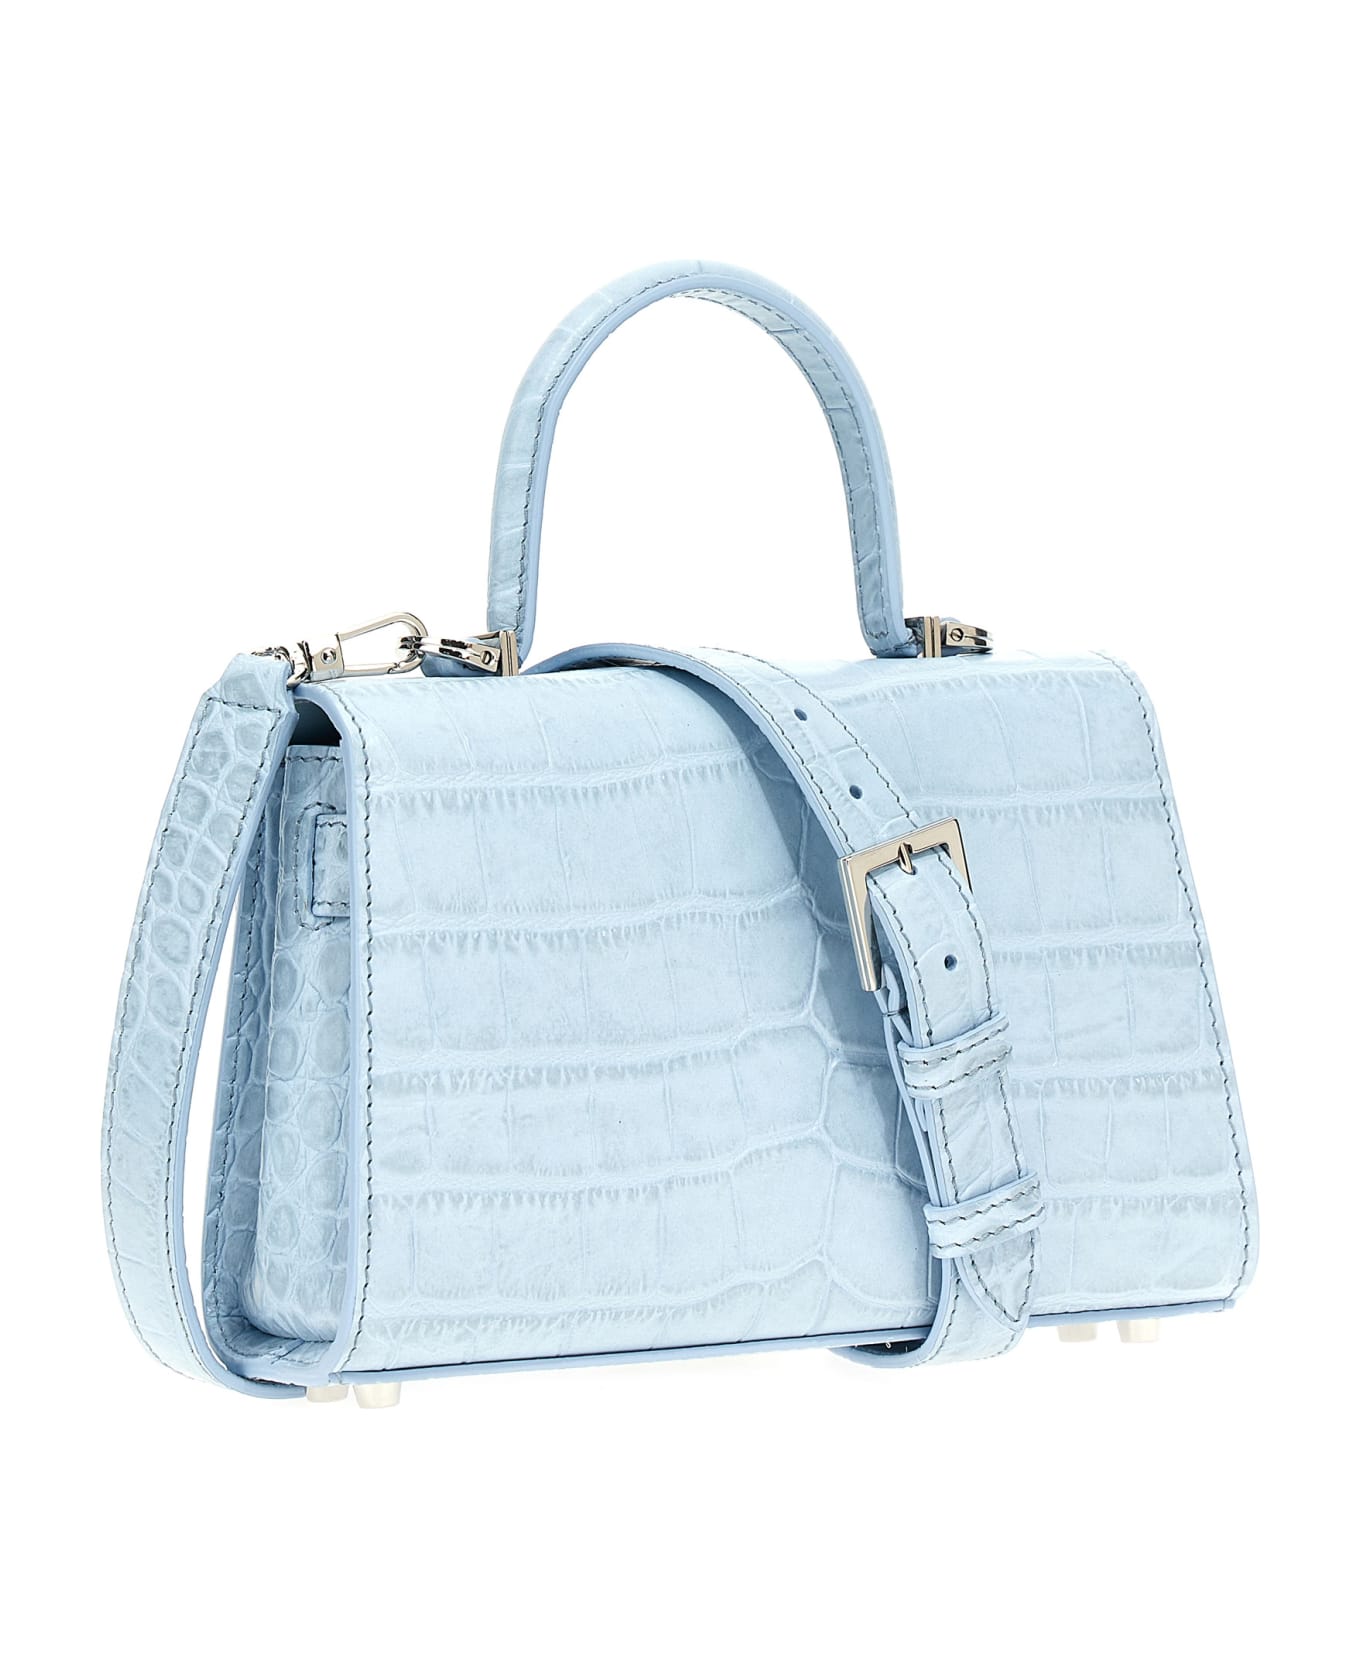 Versace 'medusa '95' Small Handbag - Light Blue